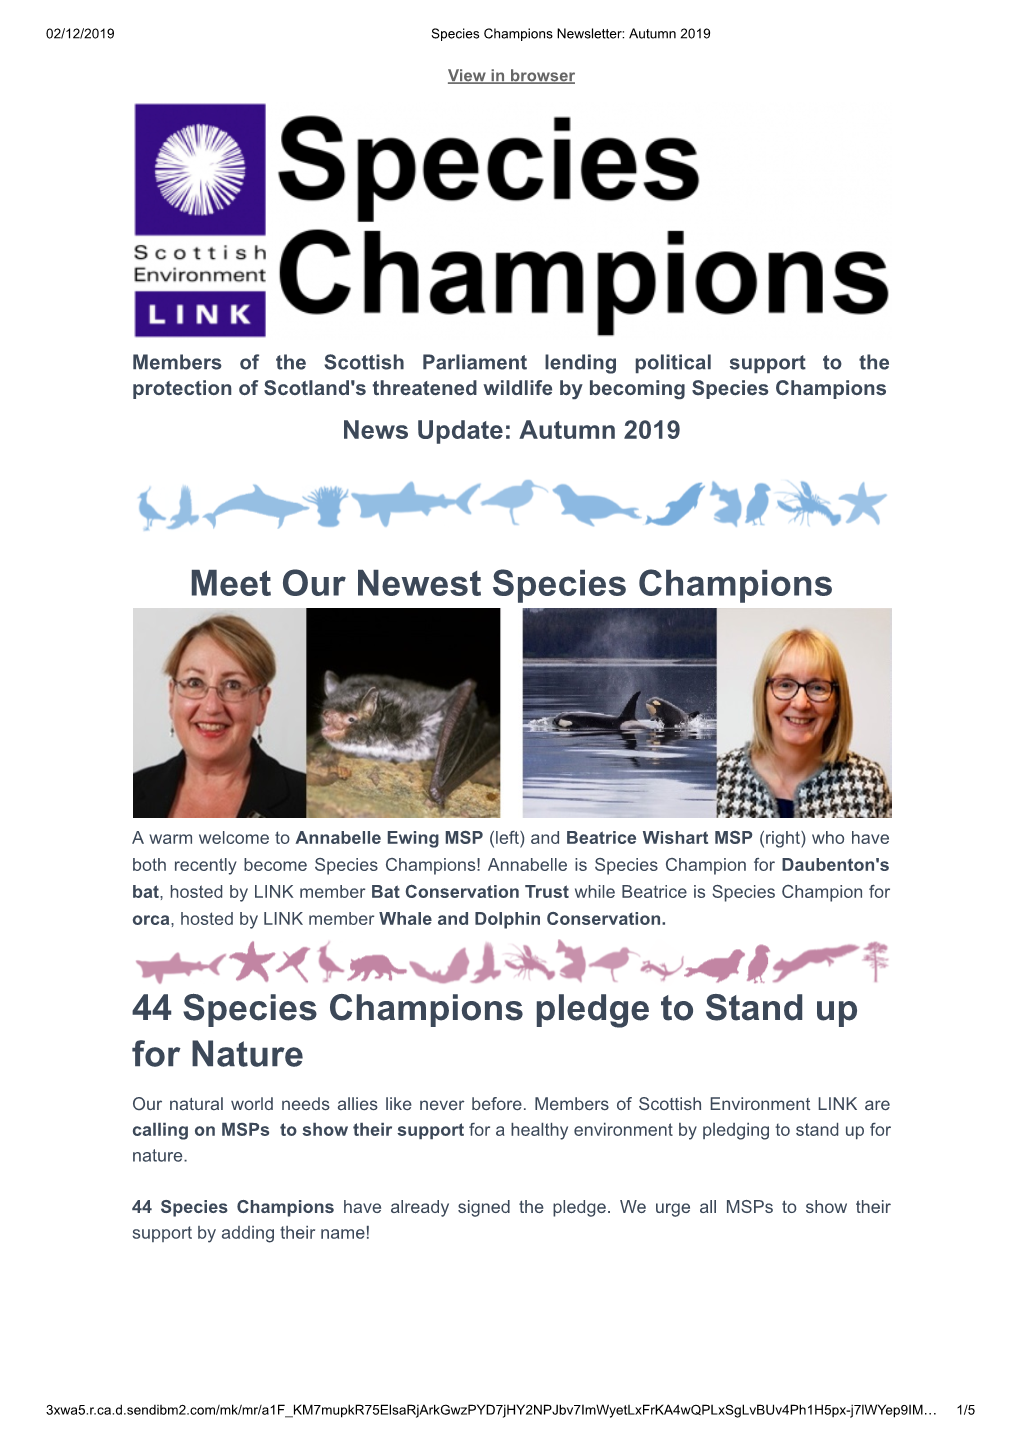 Species Champion Autumn 2019 Newsletter